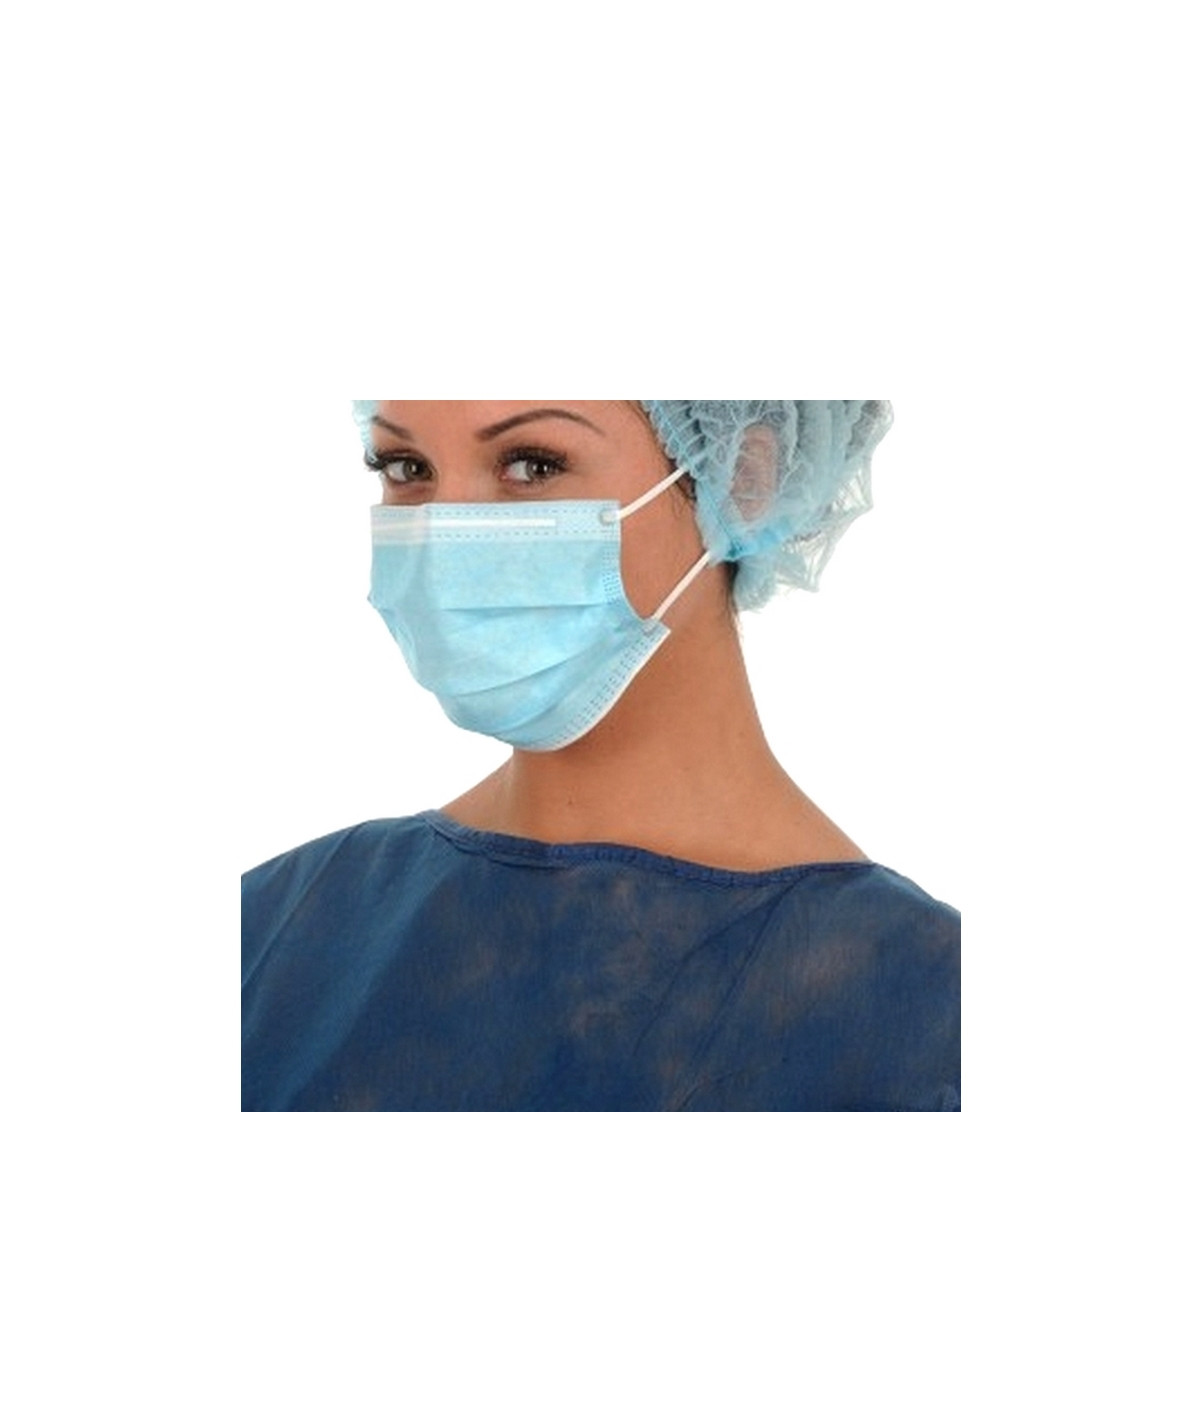 LCH - Masque chirurgical Noir 3 plis à élastiques - Type II R - Boîte de 50  masques